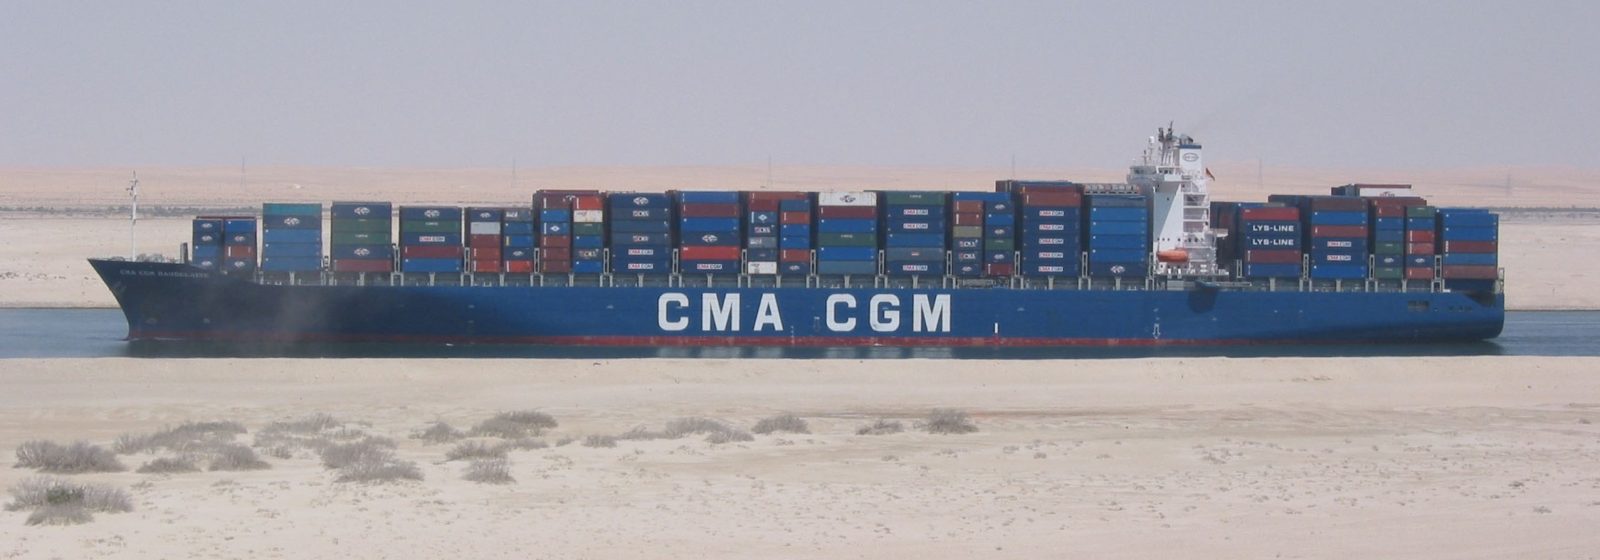 Archiefbeeld van de 'CMA CGM Baudelaire' in het Suezkanaal